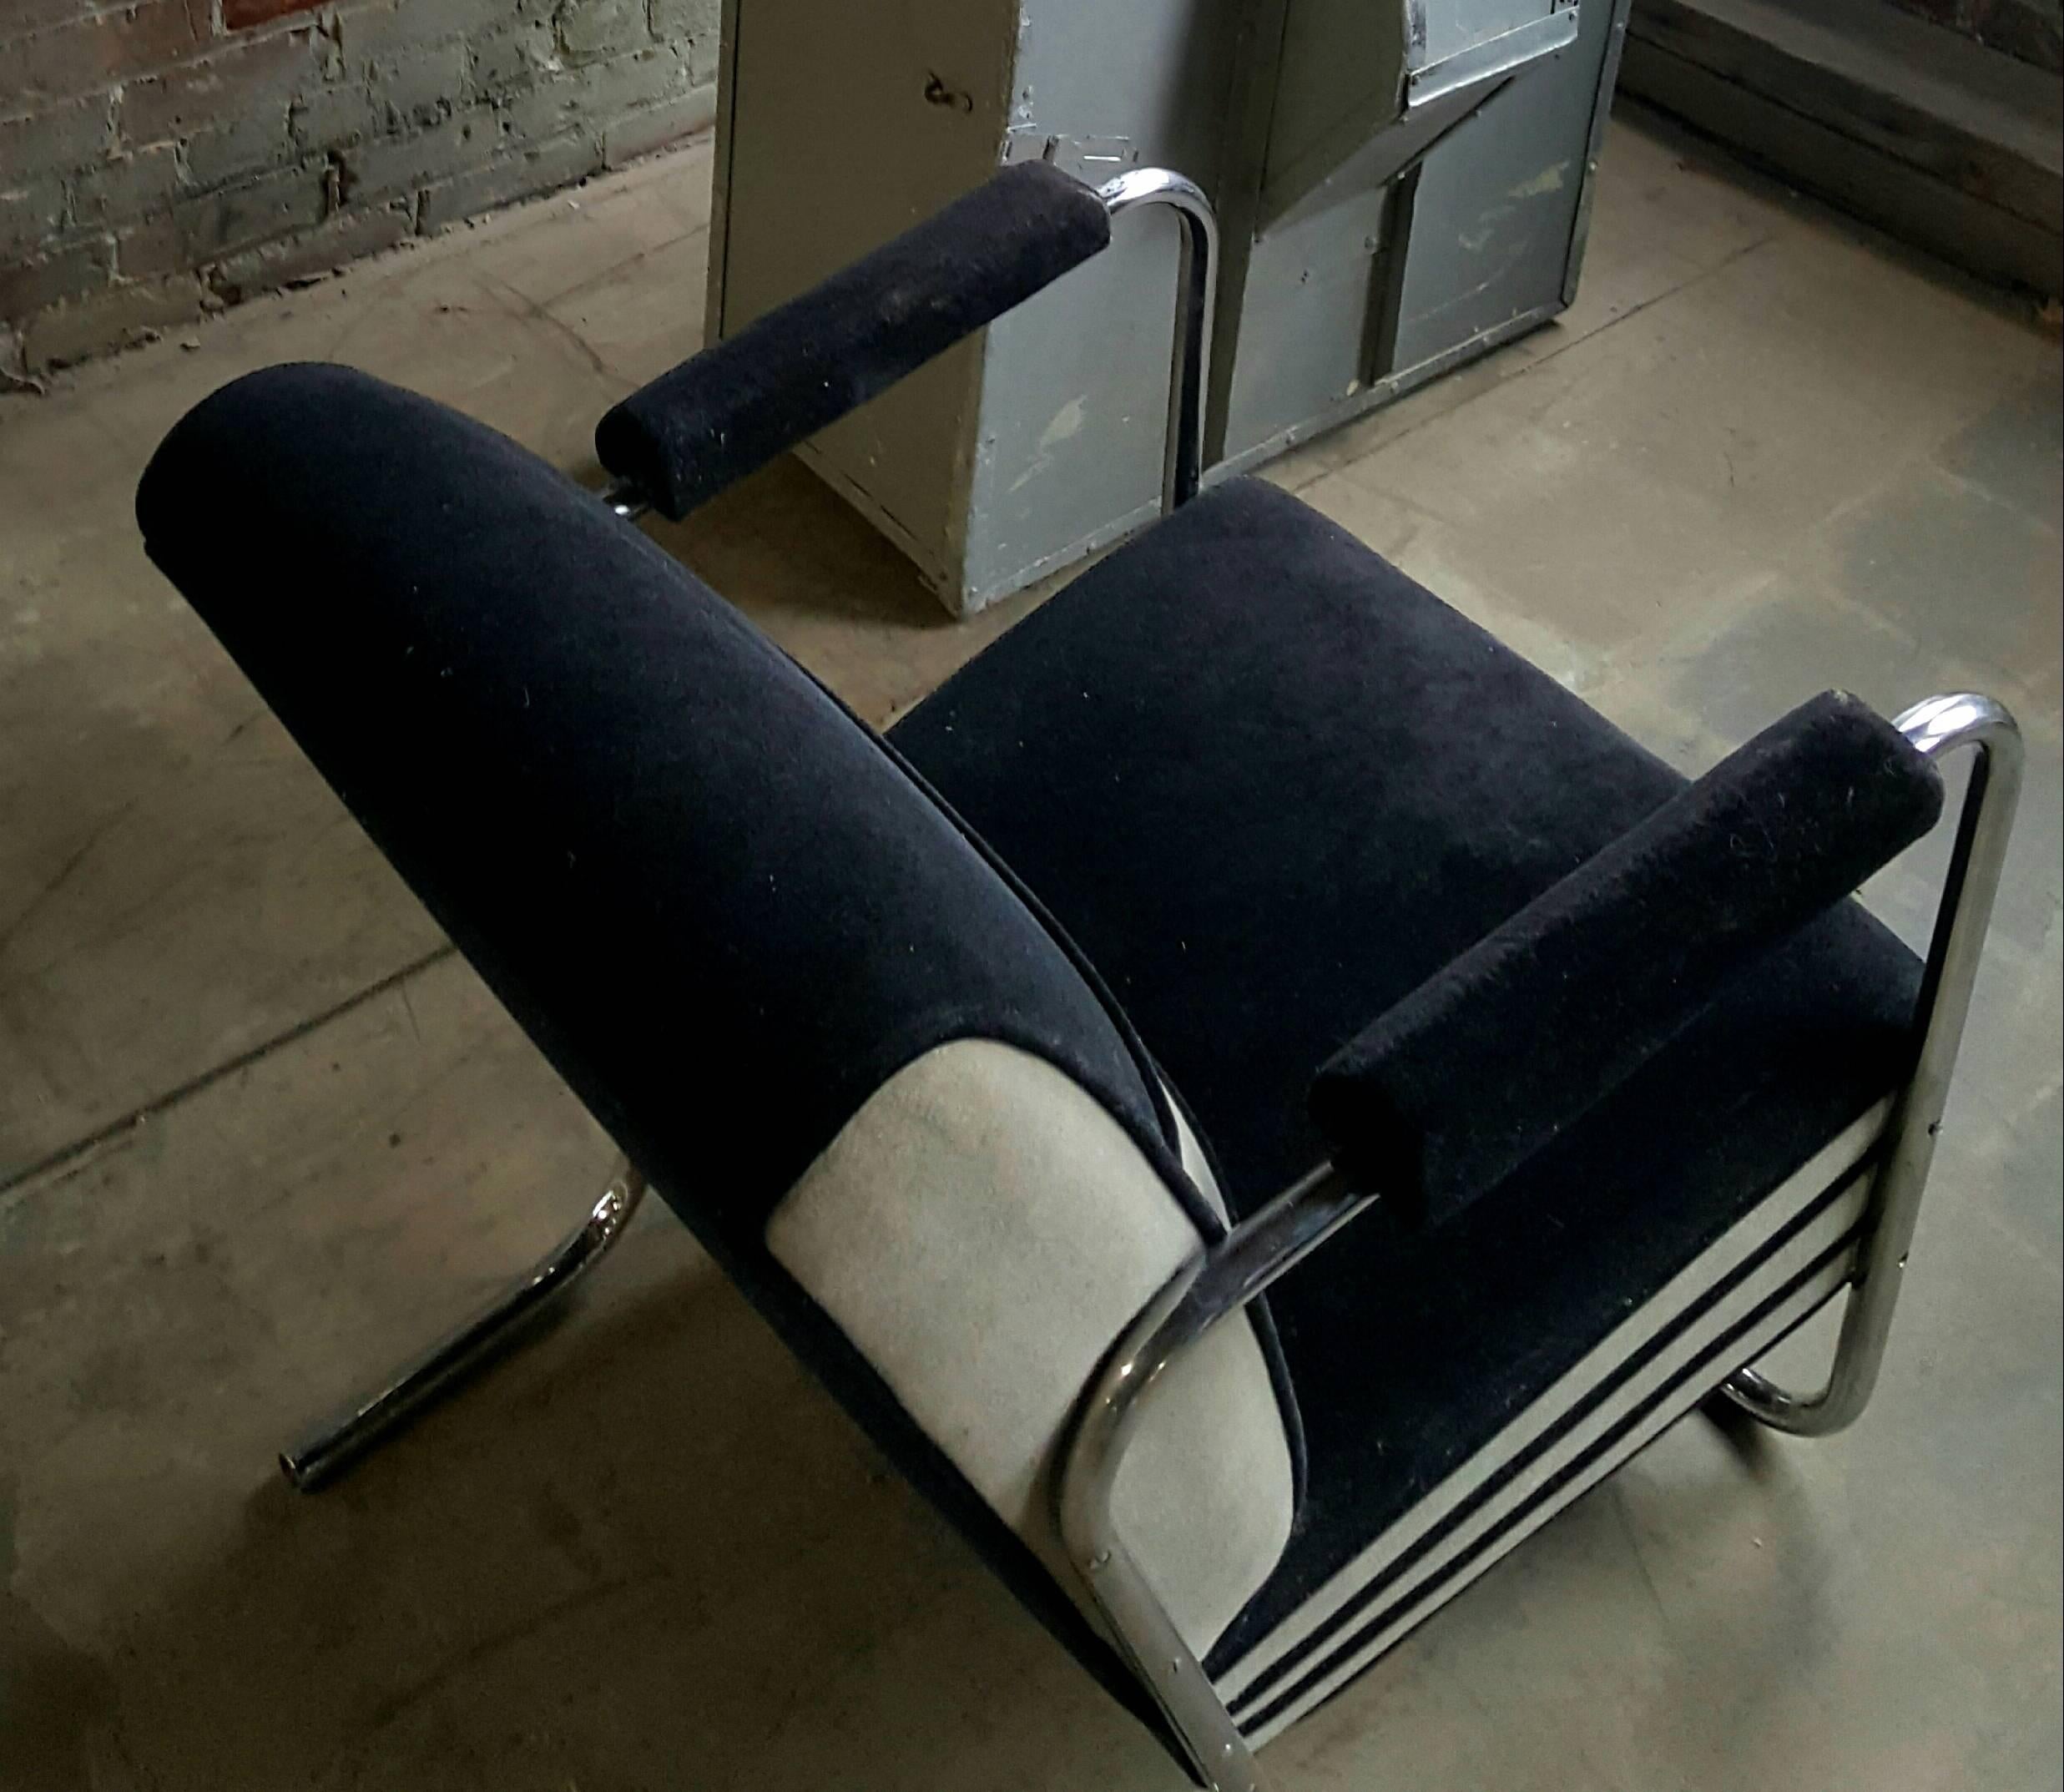 Zweifarbiger Art Deco-Sessel aus Mohair und Chrom, Maschinenzeitalter. Äußerst bequem, ungewöhnliche Form, verchromte Beine mit doppelter Schlaufe, der ursprüngliche zweifarbige Mohair-Stoff ist erhalten.